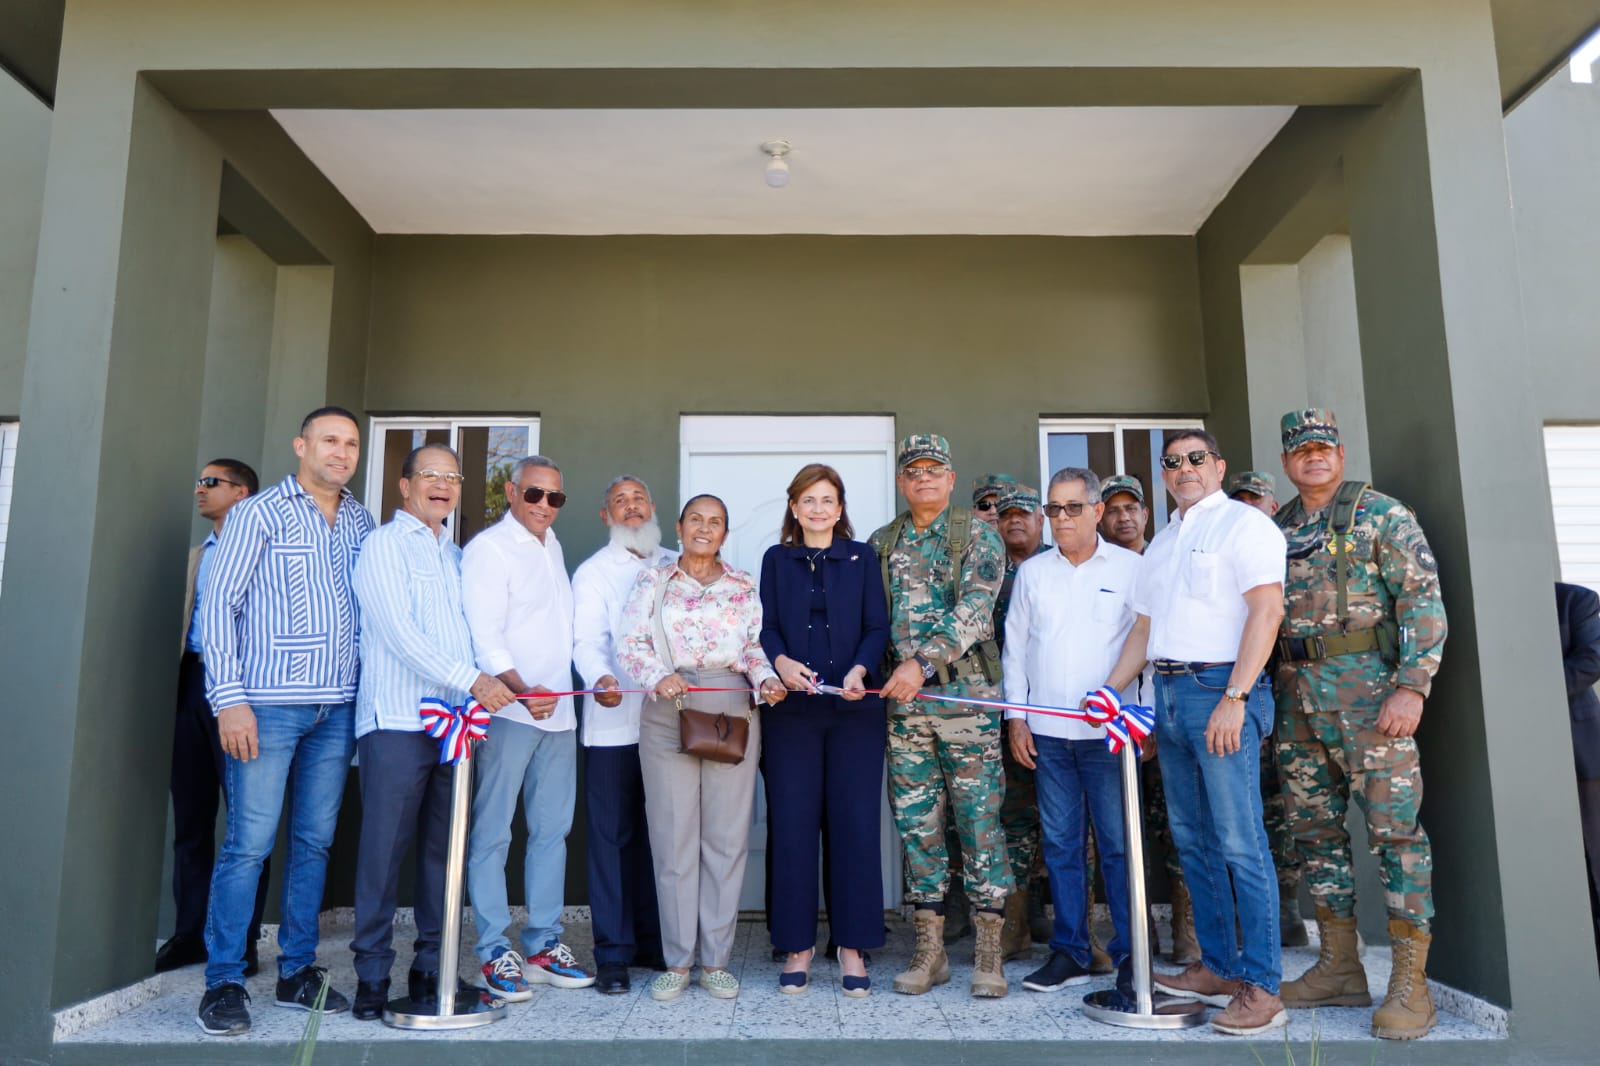 Vicepresidenta inaugura destacamento militar y supervisa reconstrucción de factoría federación agraria en Yuna